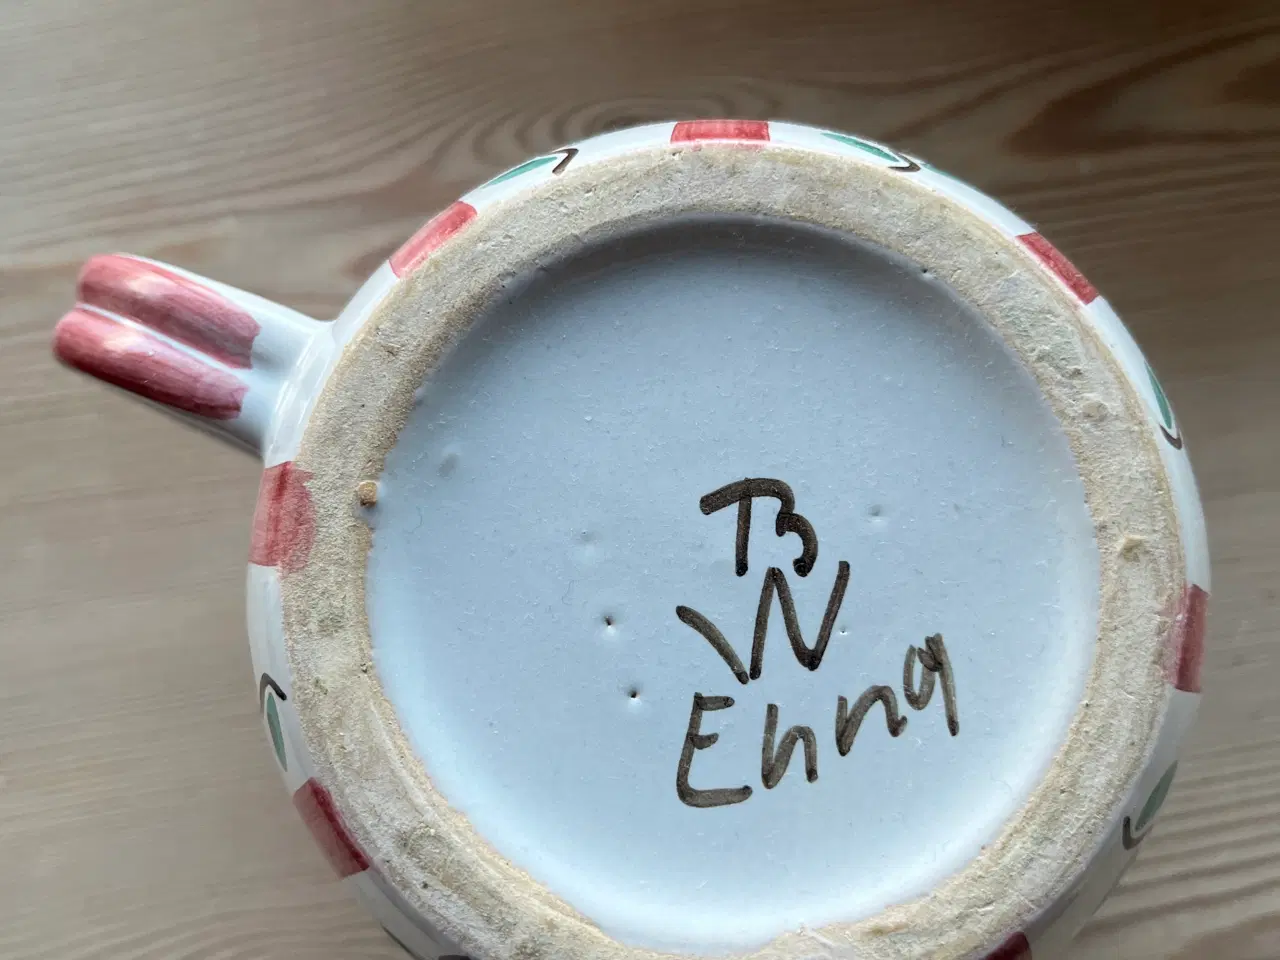 Billede 5 - Retro dansk keramik, Enna 